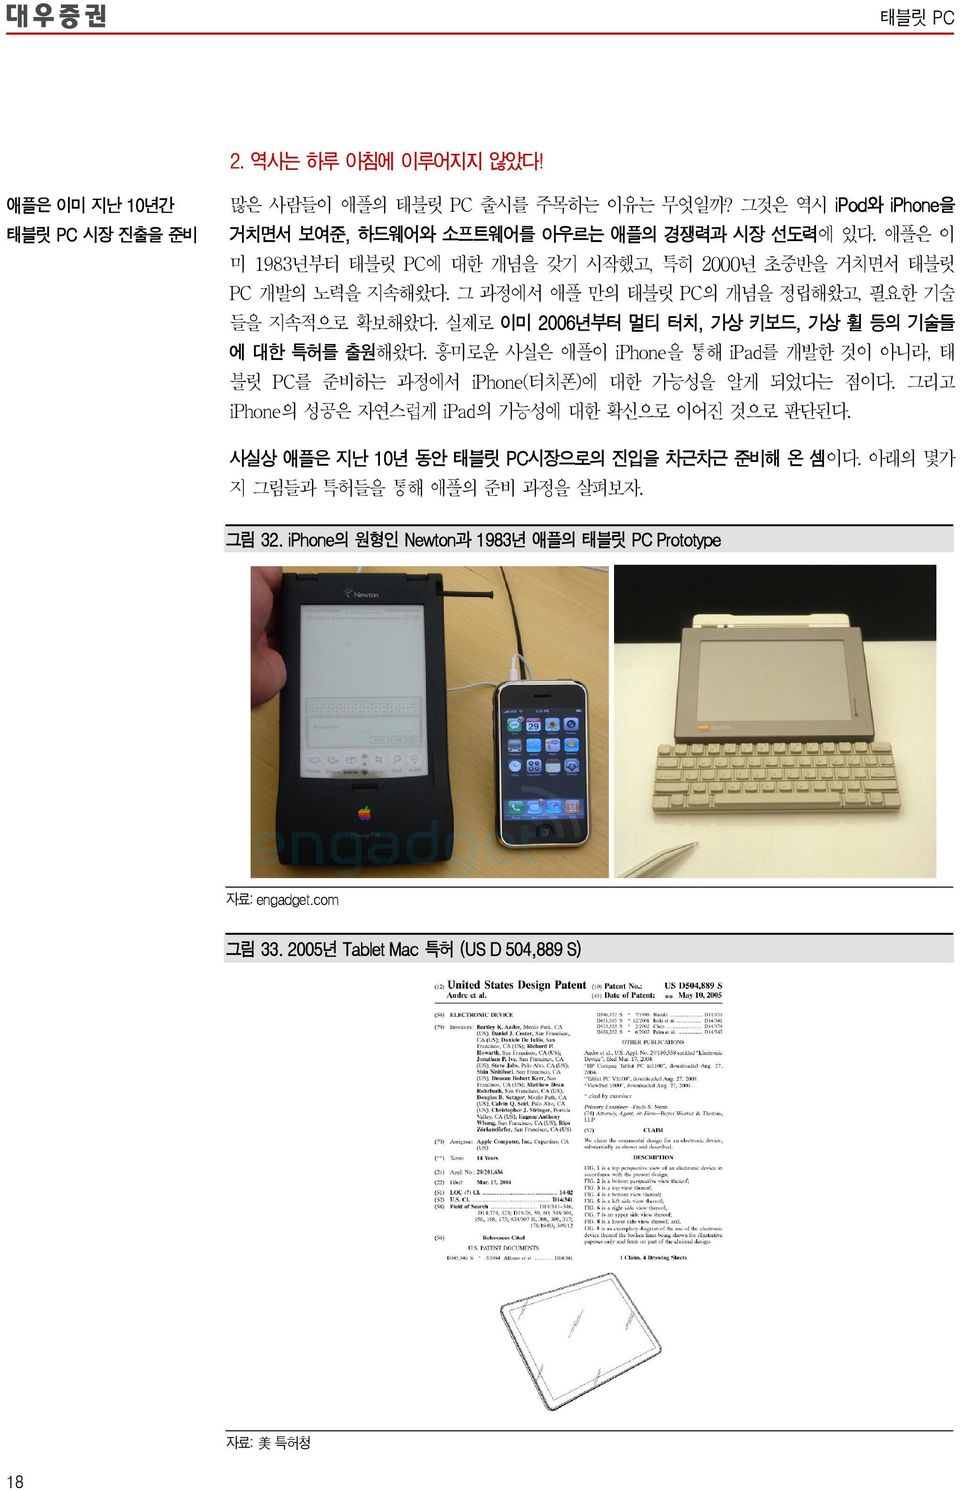 실제로 이미 26년부터 멀티 터치, 가상 키보드, 가상 휠 등의 기술들 에 대한 특허를 출원해왔다. 흥미로운 사실은 애플이 iphone을 통해 ipad를 개발한 것이 아니라, 태 블릿 PC를 준비하는 과정에서 iphone(터치폰)에 대한 가능성을 알게 되었다는 점이다.